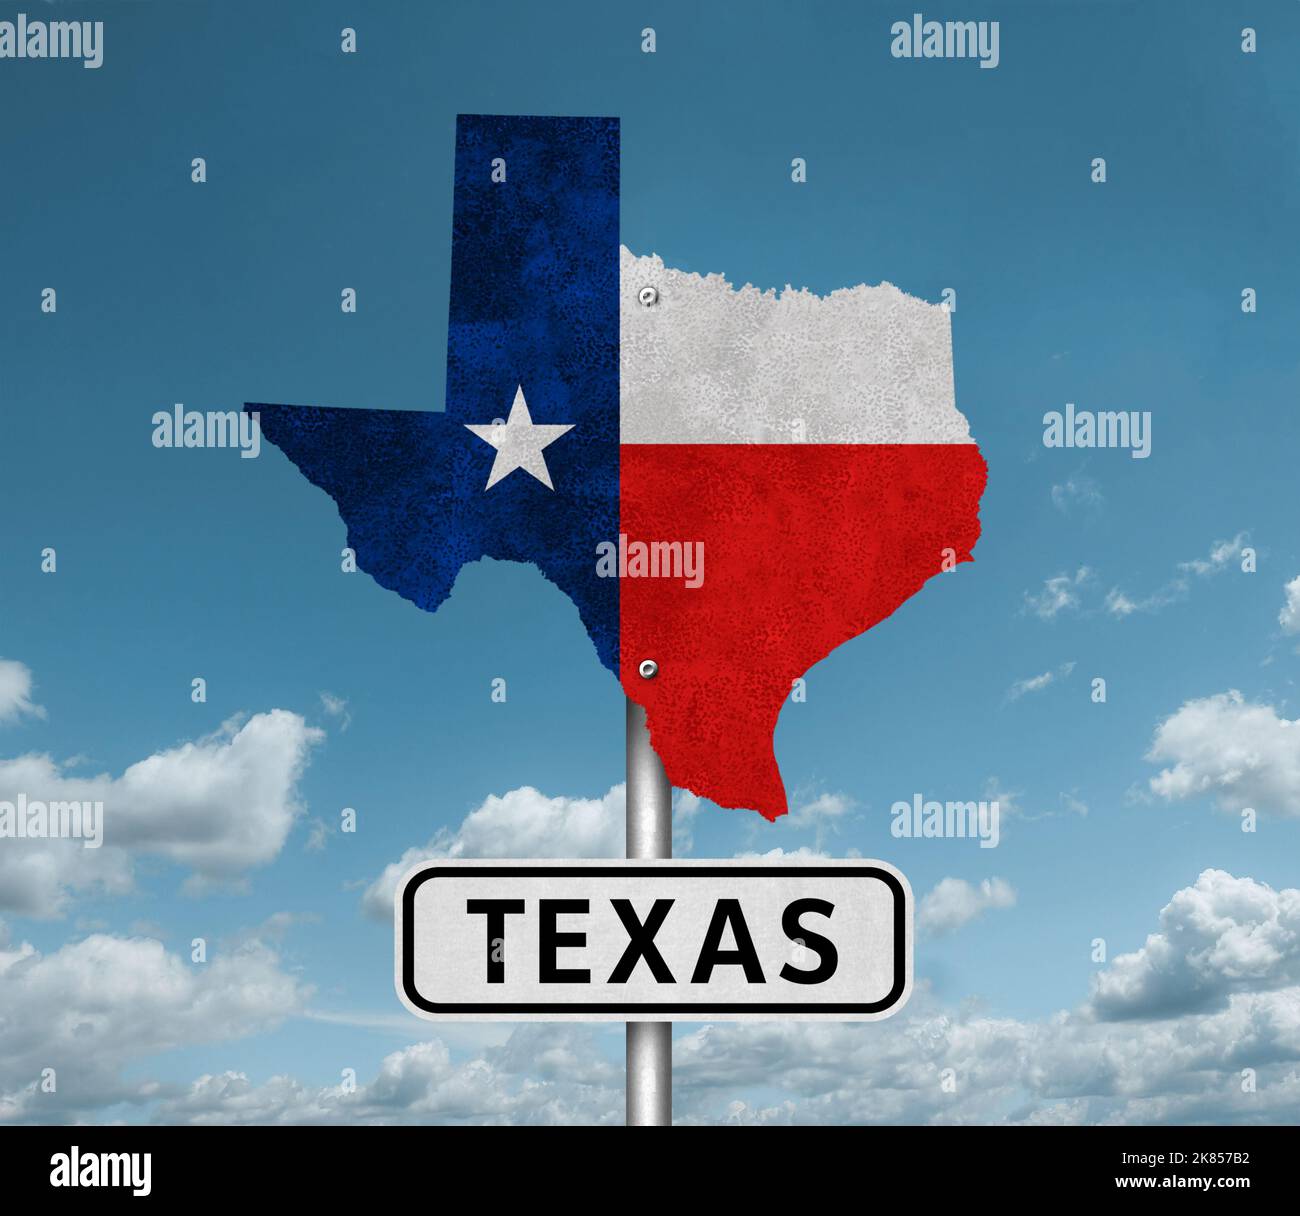 Drapeau et carte de l'État du Texas - signalisation routière Banque D'Images